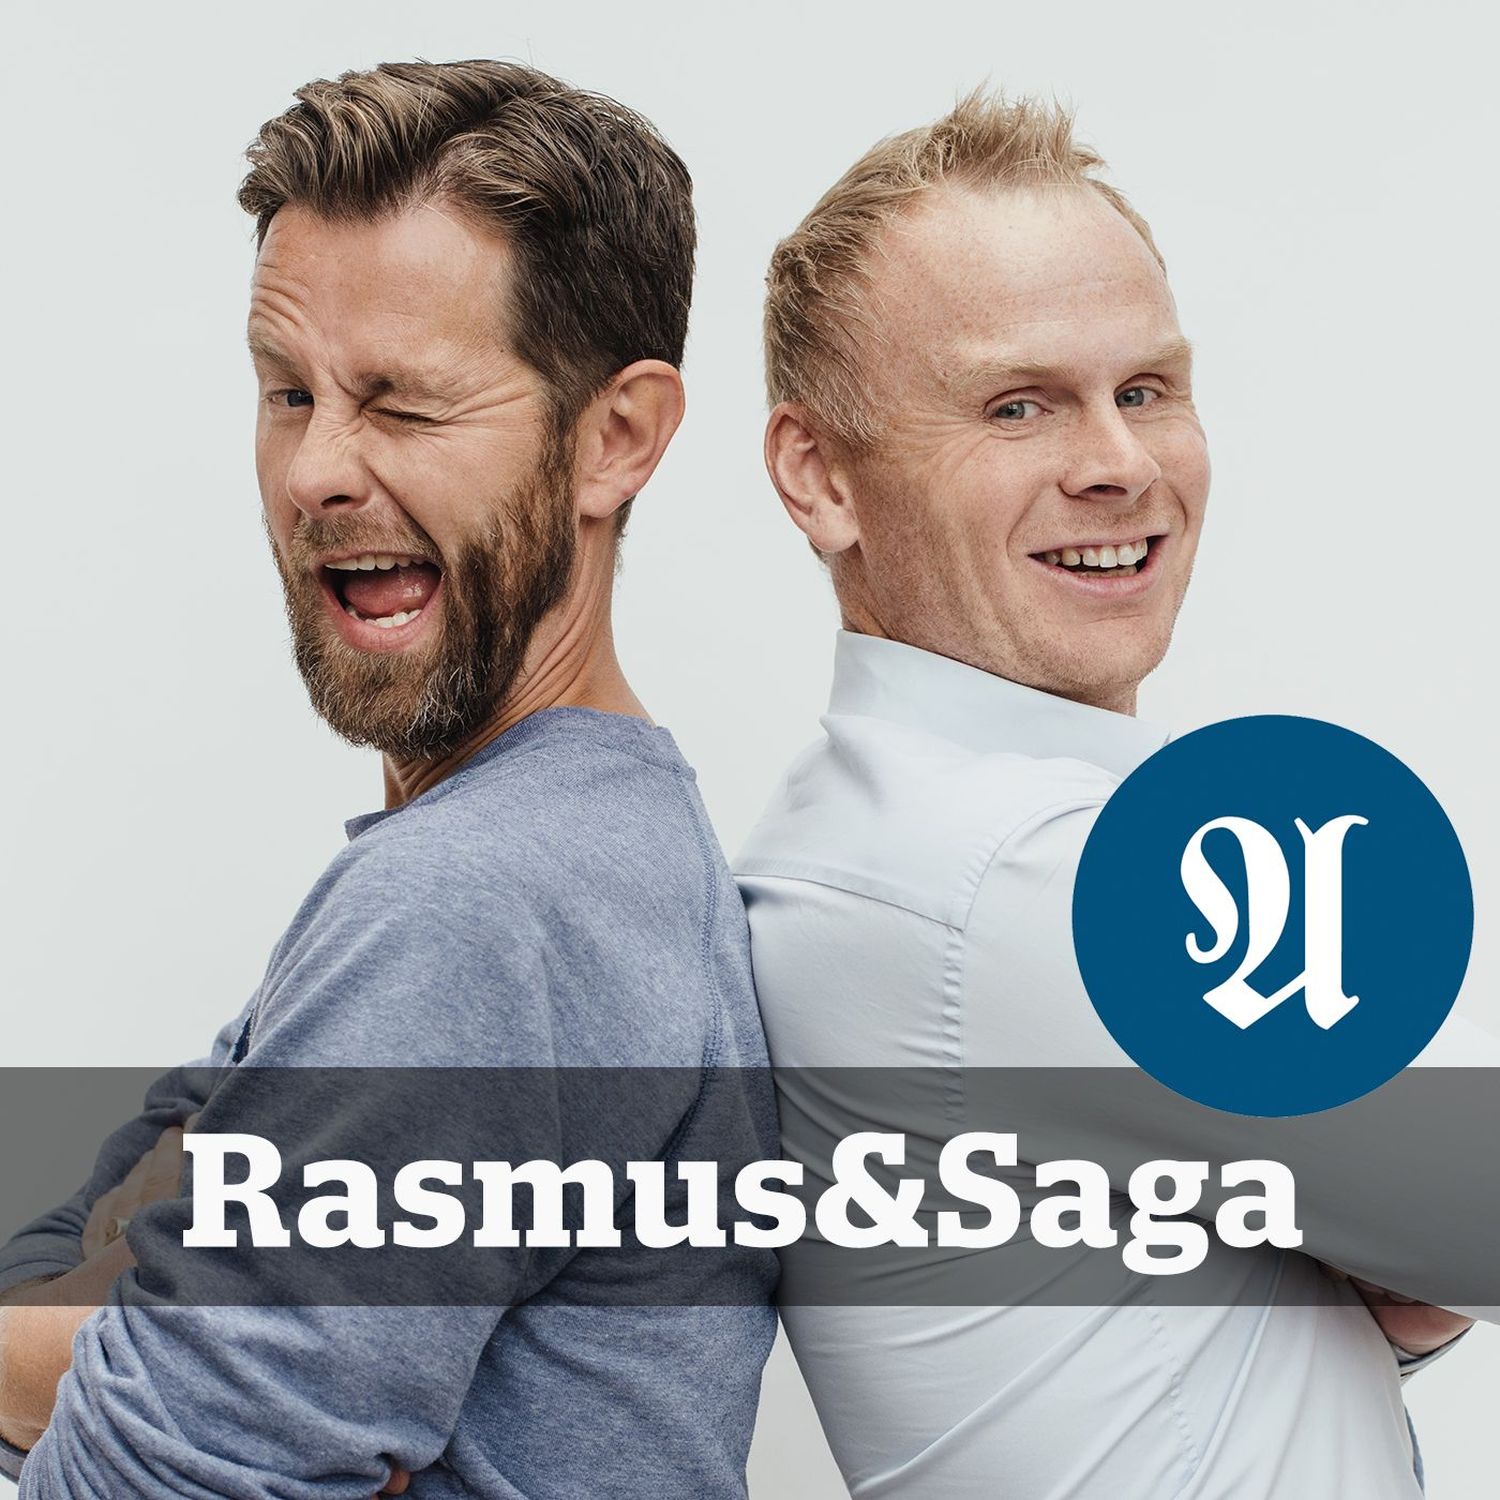 Rasmus & Saga